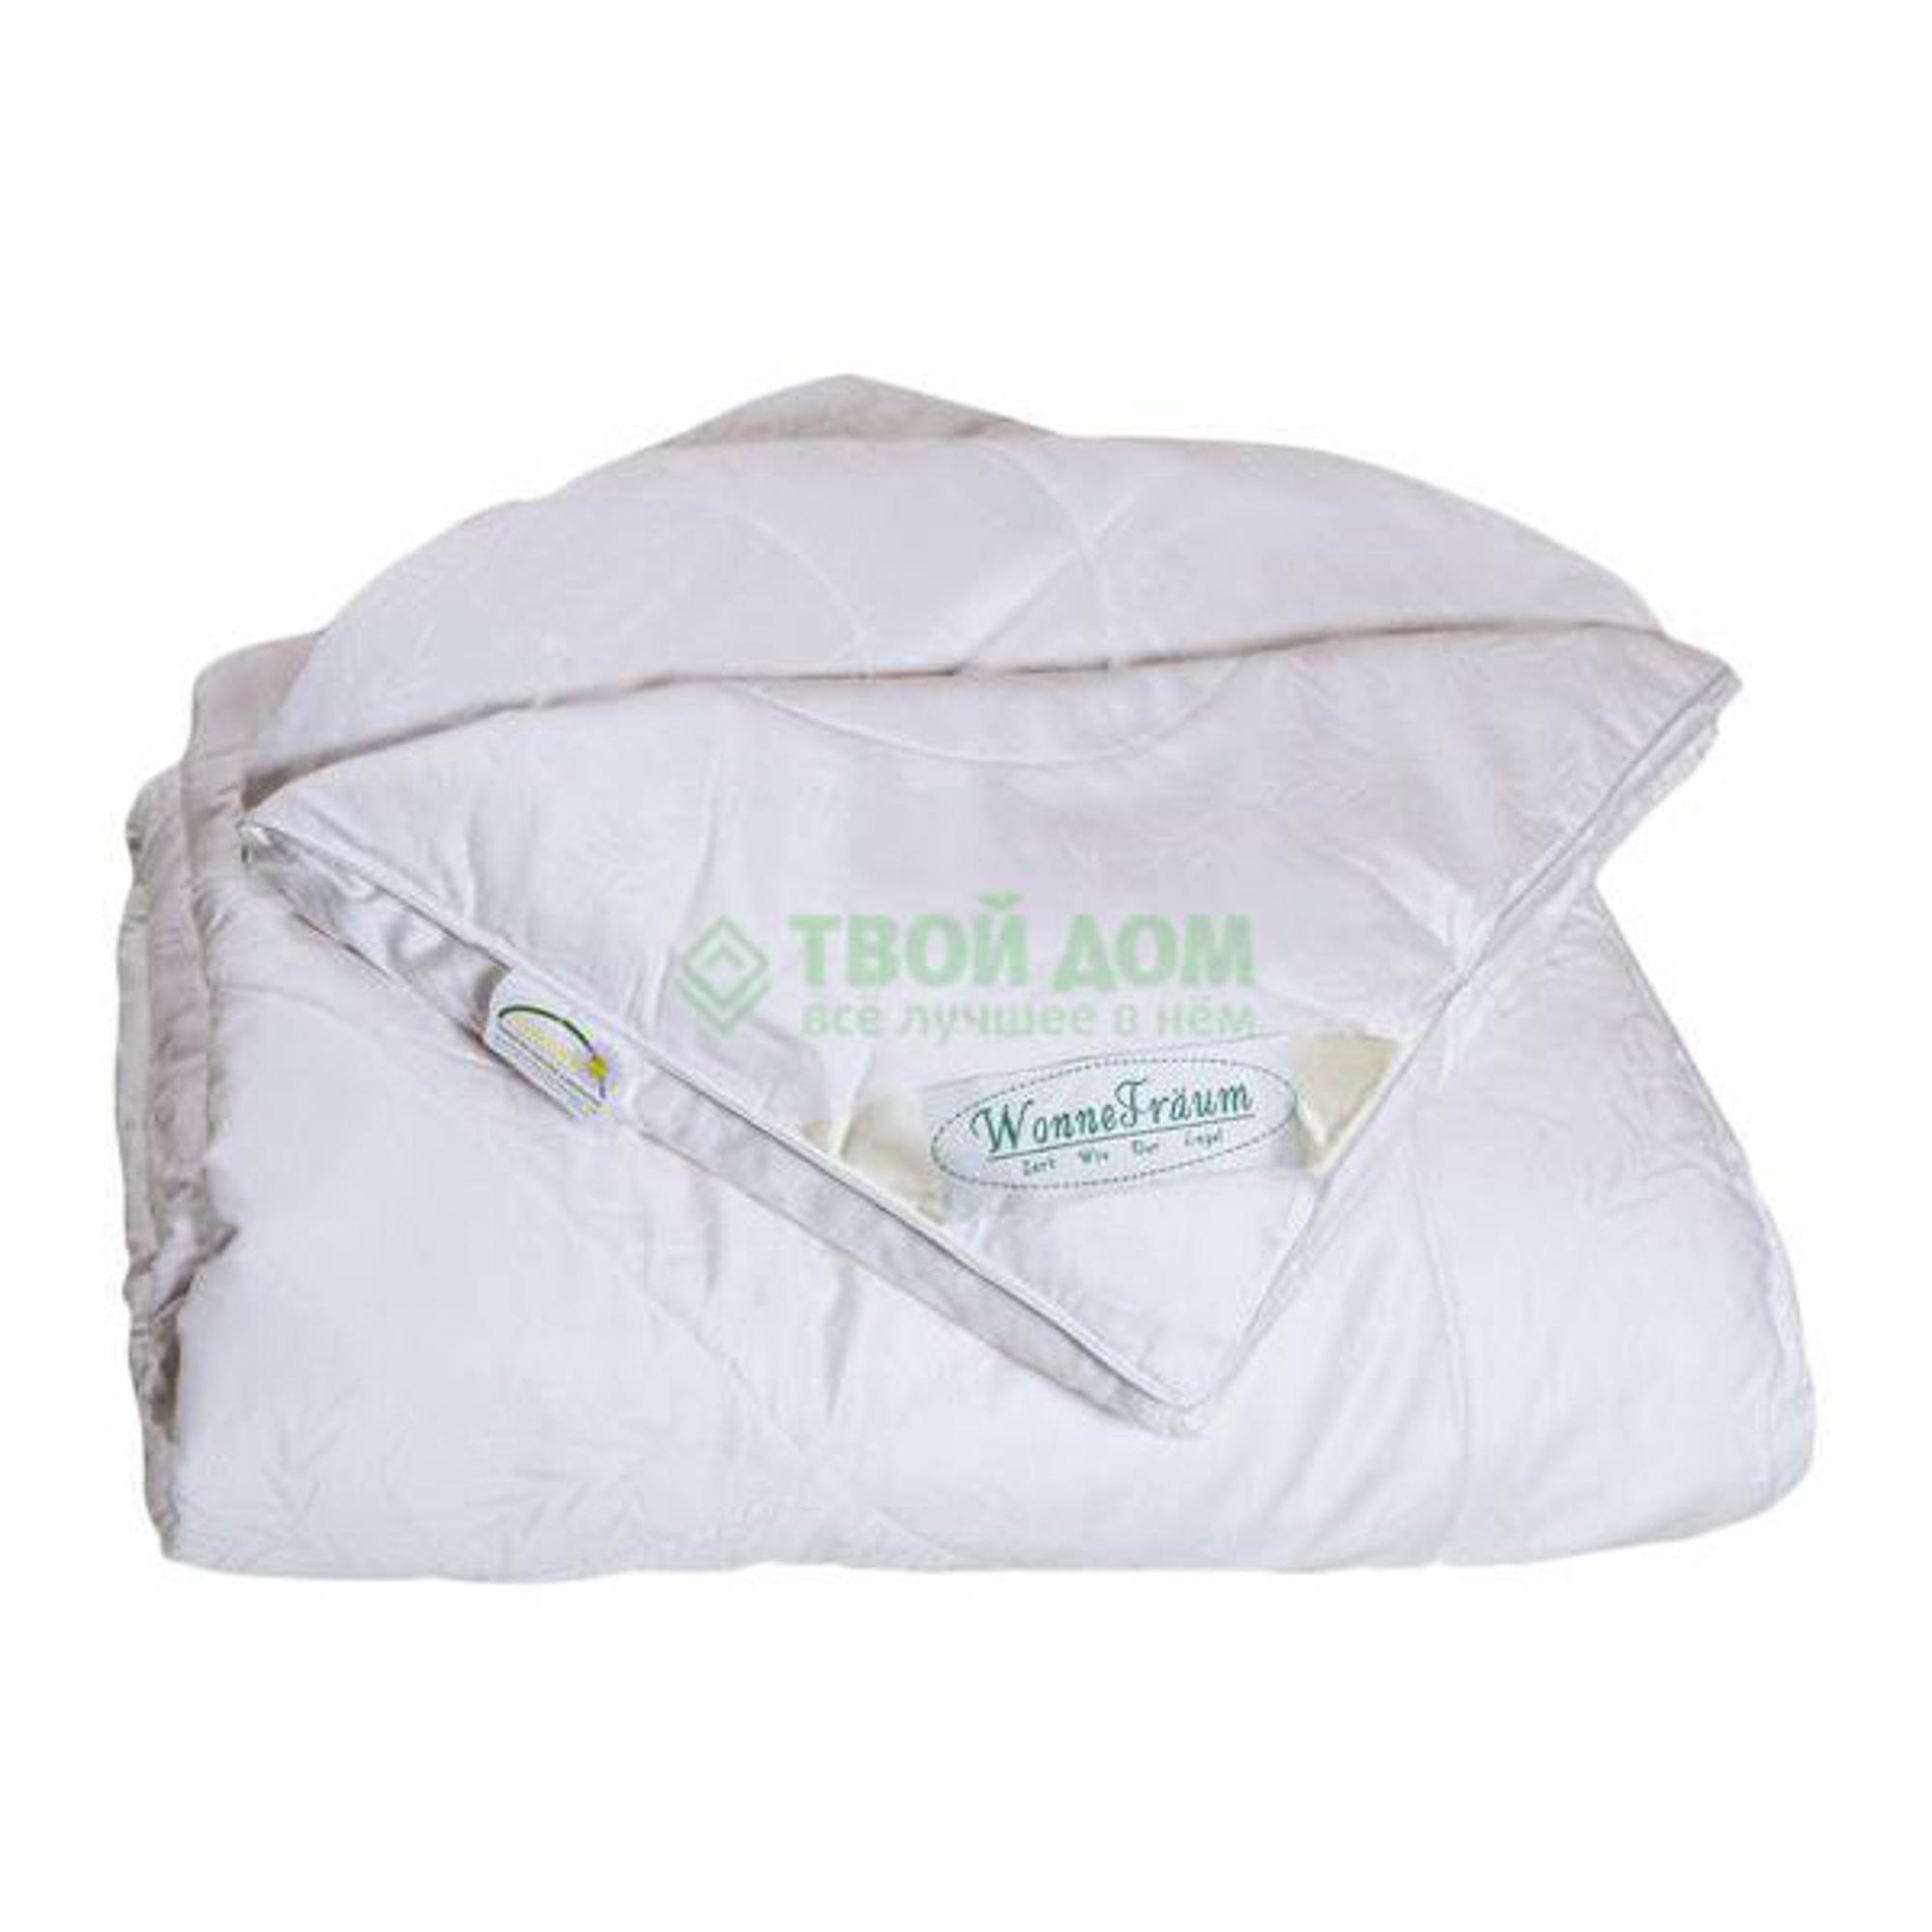 Одеяло Wonne Traum Бамбук 200x220, цвет белый, размер 200х220 см